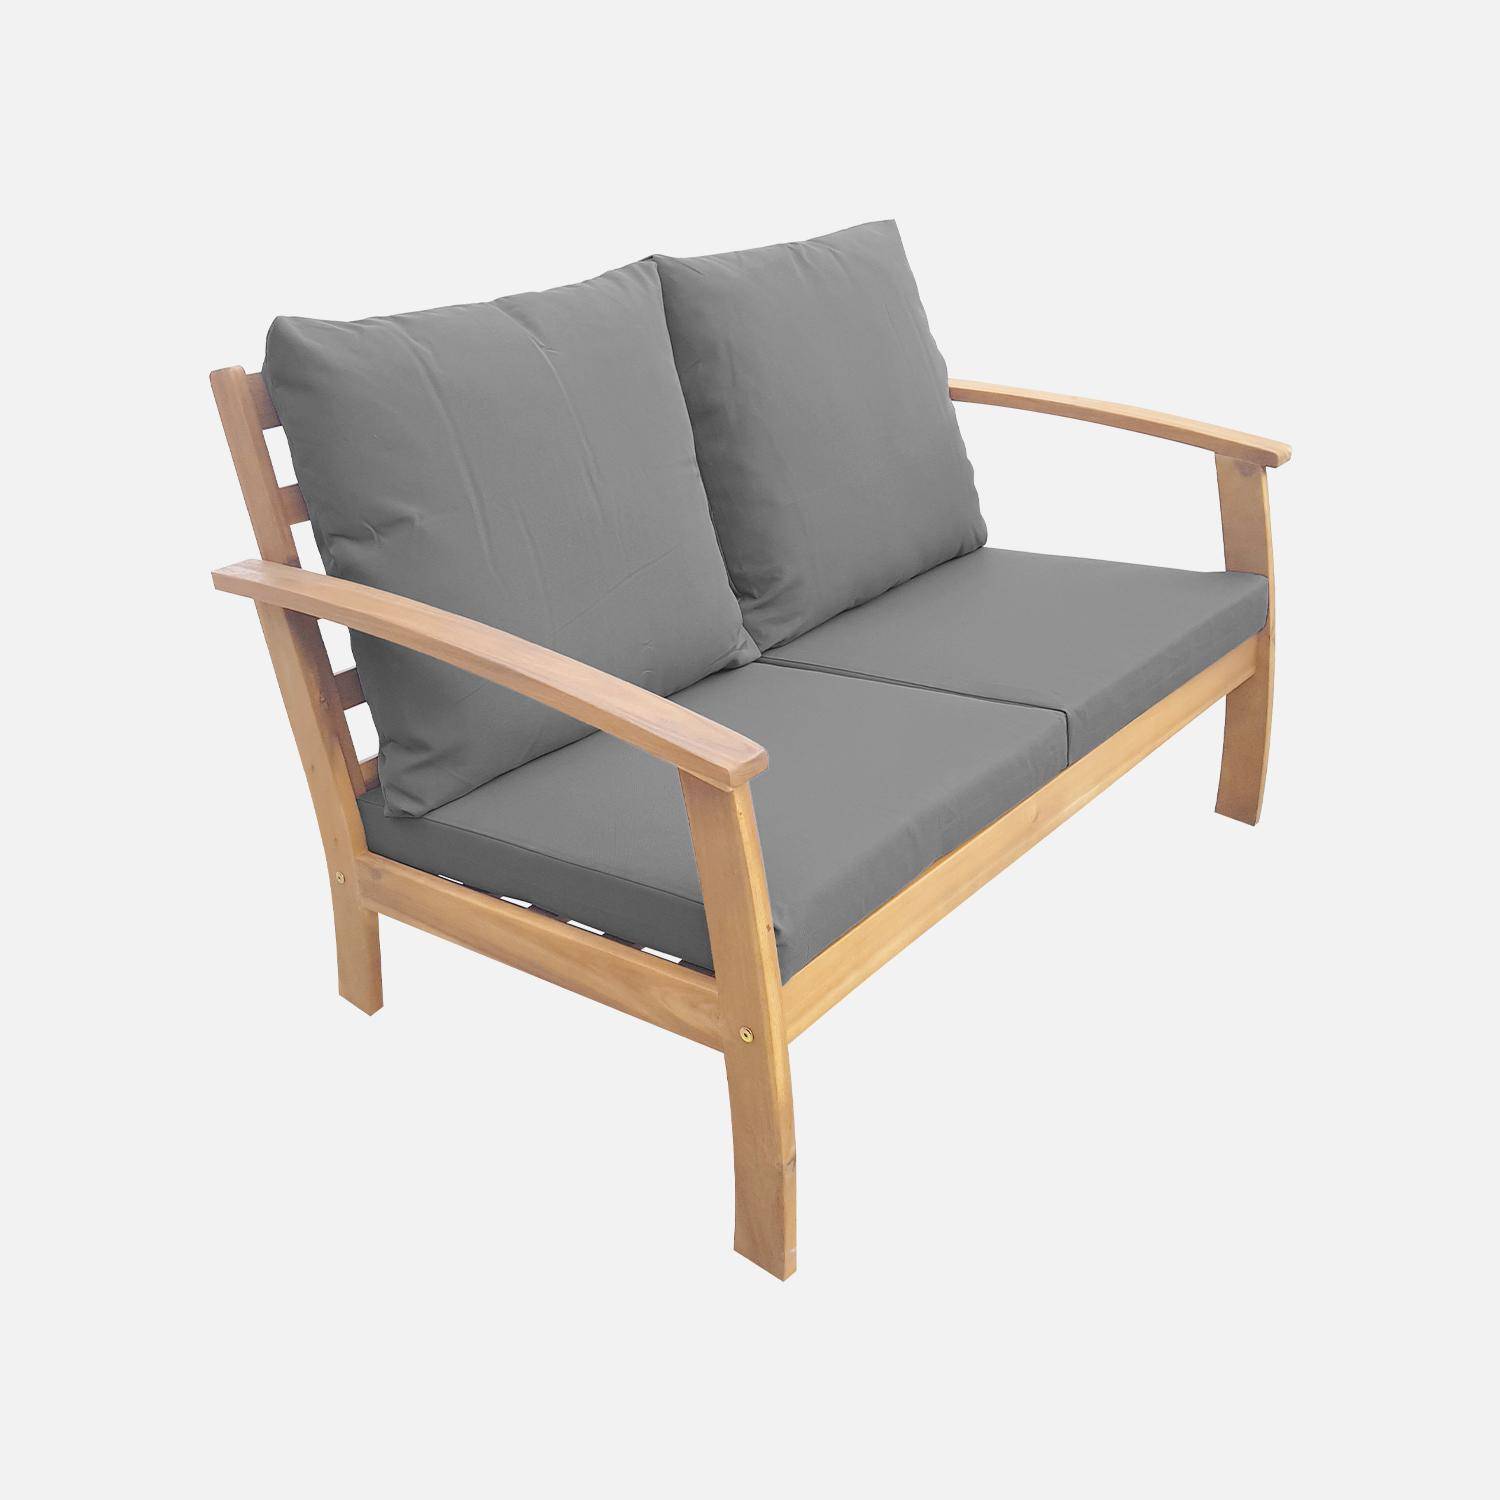 Gartengarnitur aus Holz 4 Sitze - Ushuaïa - graue Kissen, Sofa, Sessel und Couchtisch aus Akazie, Design Photo3